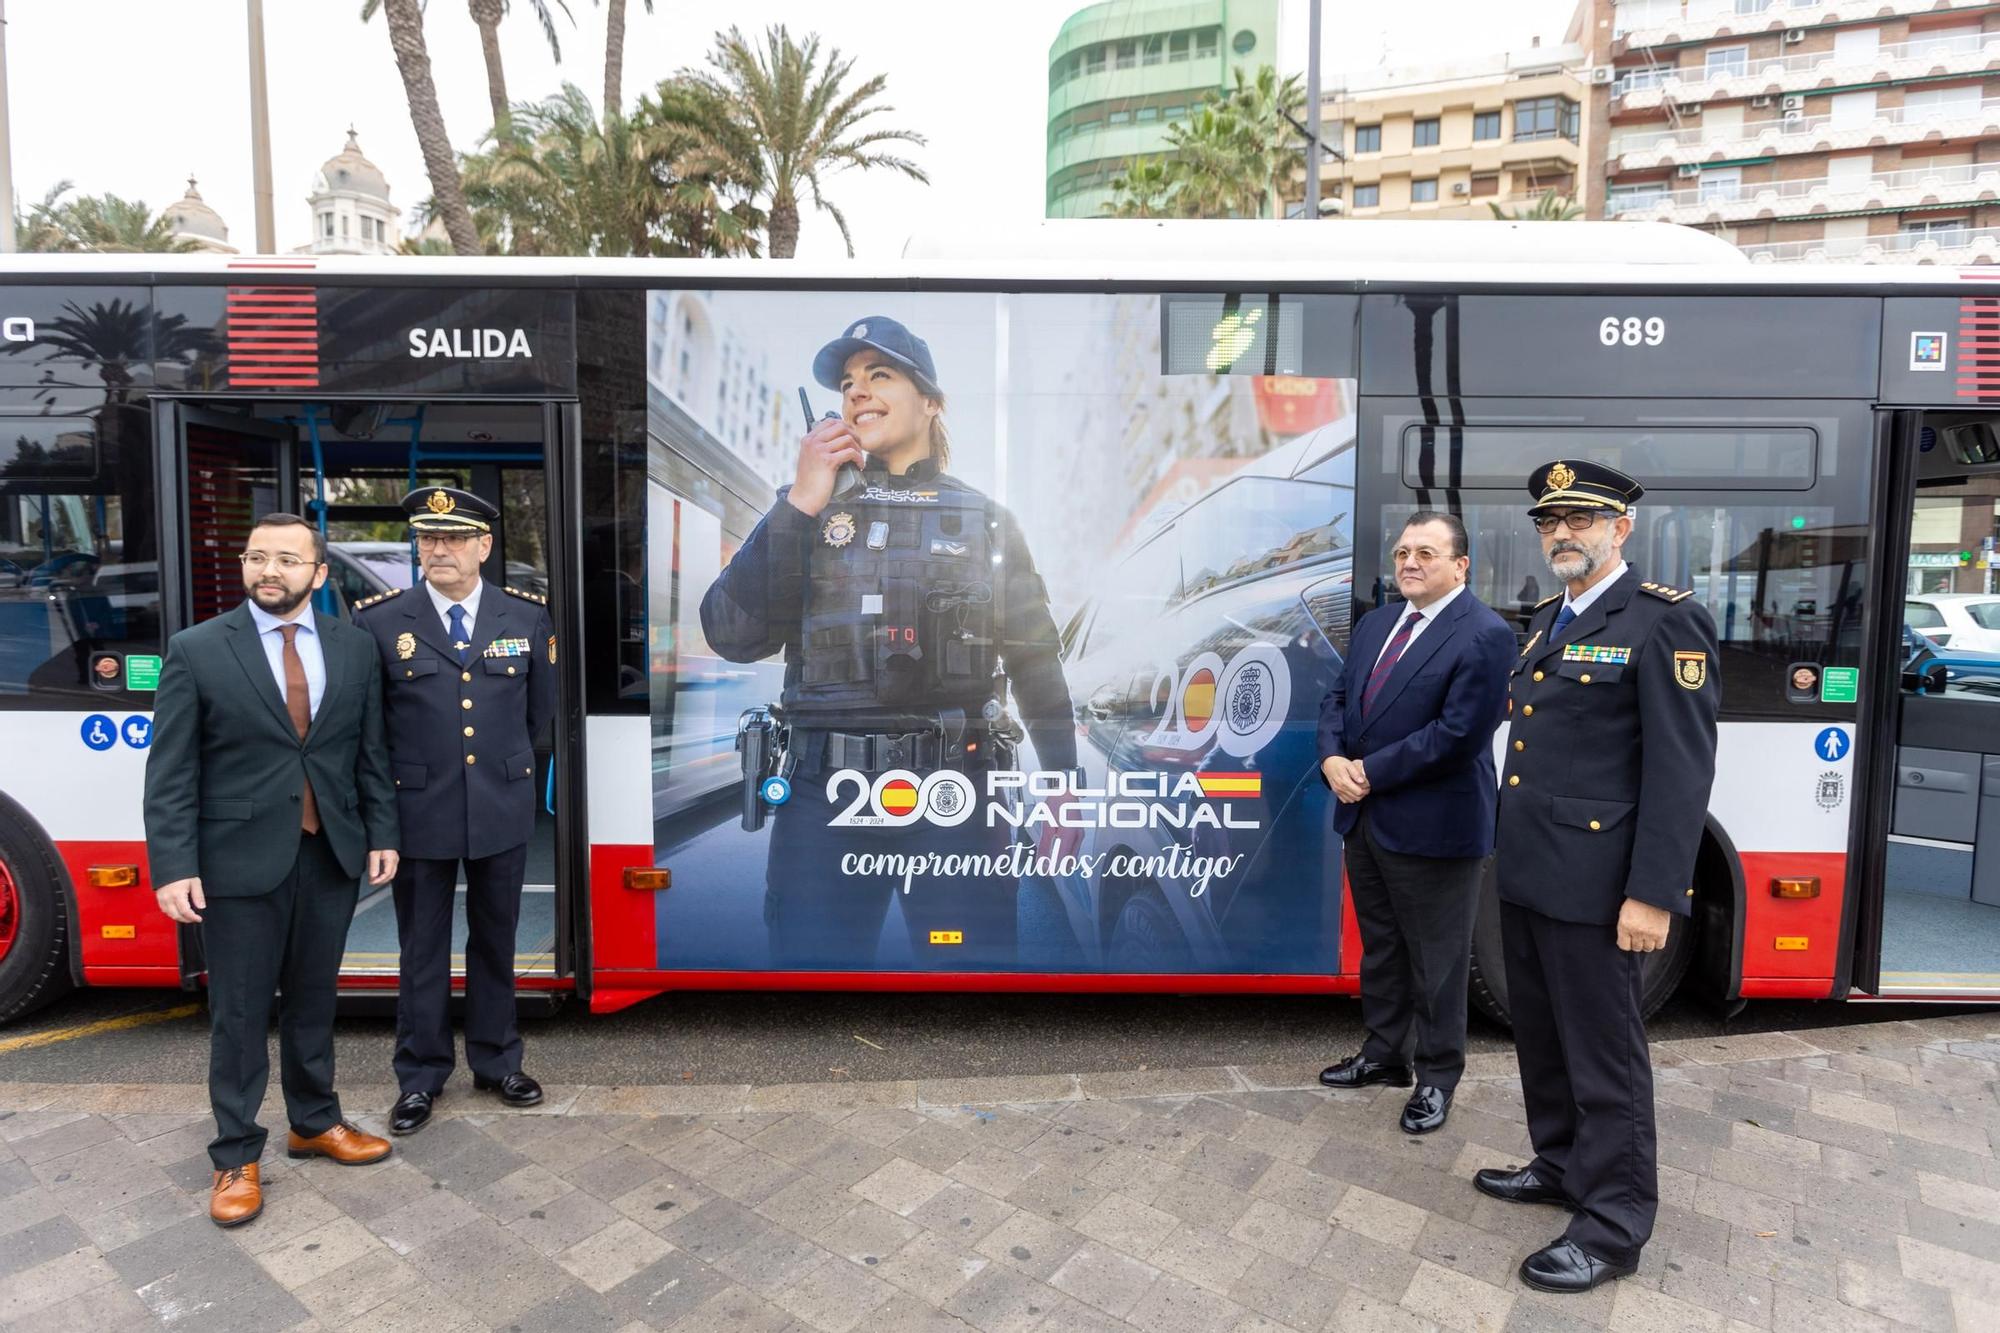 Vectalia presenta un autobús rotulado conmemorando el 200 aniversario de la Policía Nacional en Alicante